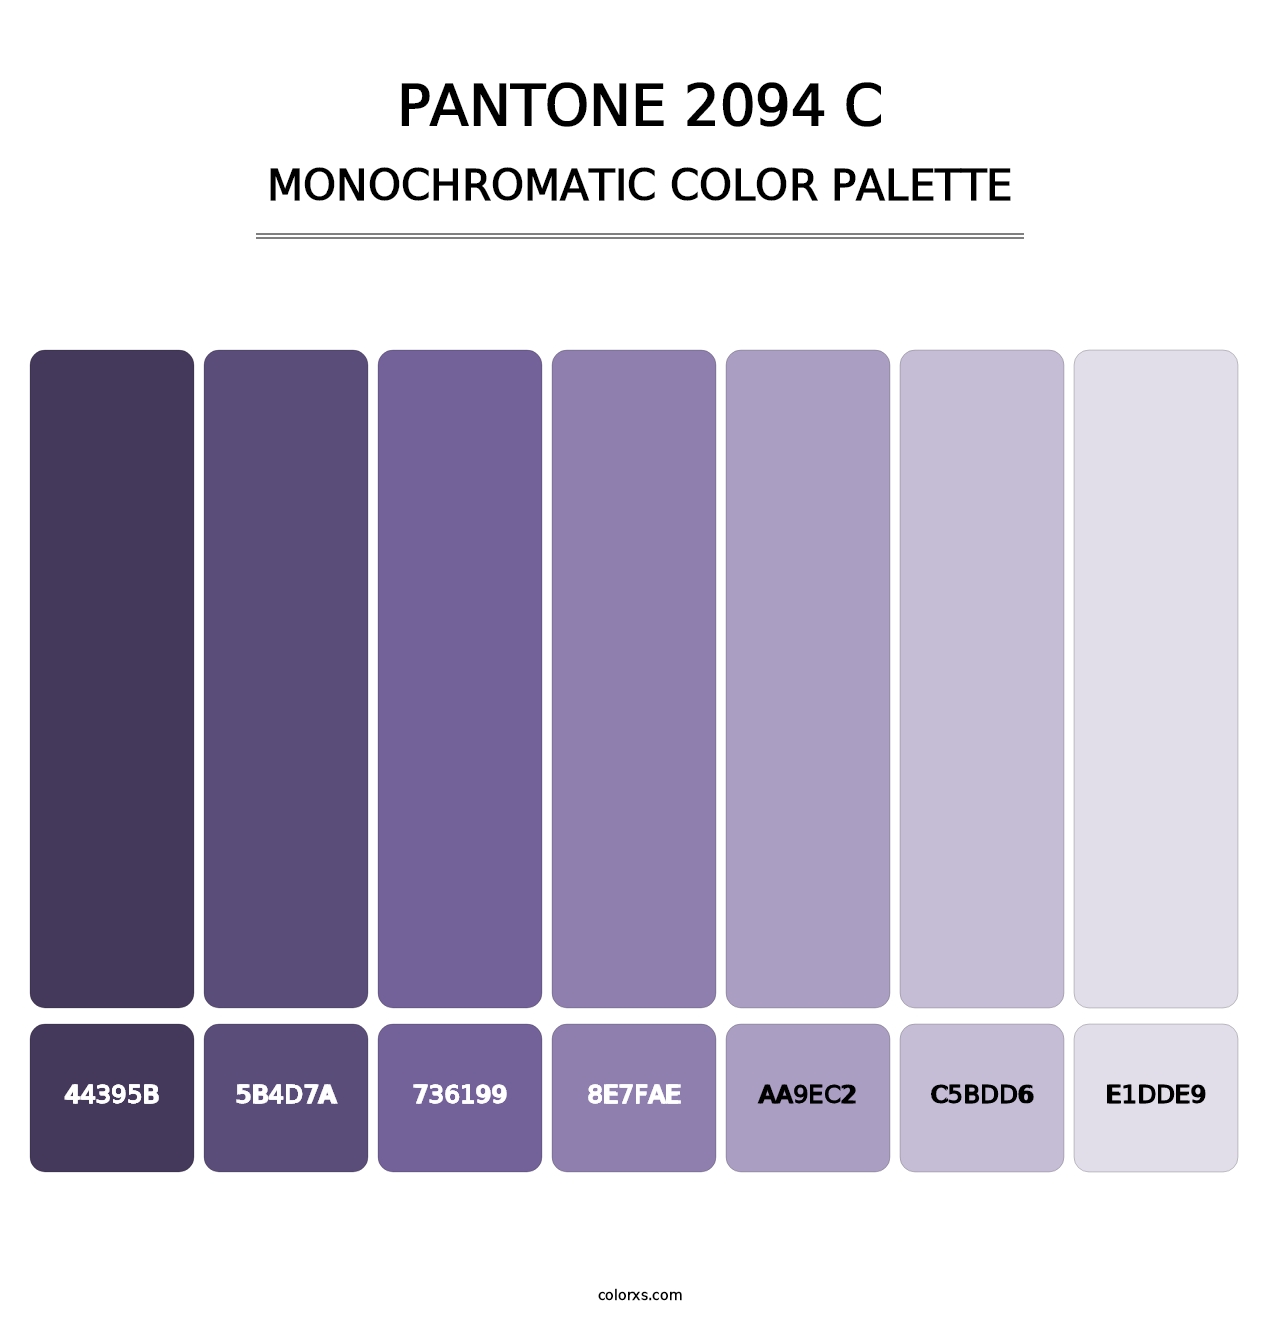 PANTONE 2094 C - Monochromatic Color Palette